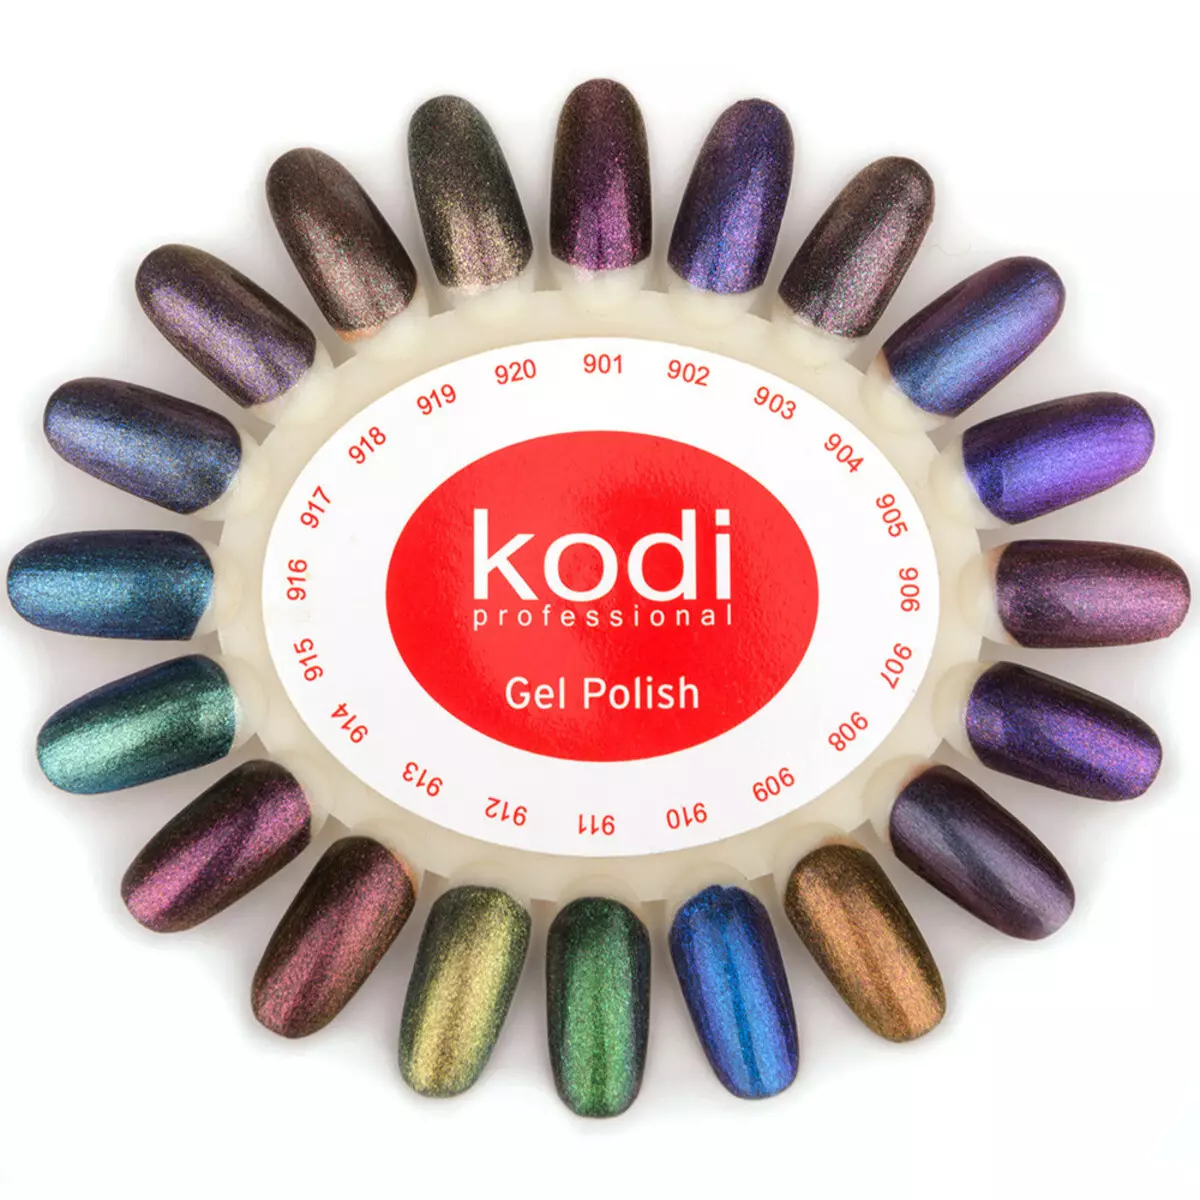 Kodi מקצועי ג 'ל לכה (73 תמונות): צבע לוח עם שמות, מידע על החברה ואת הציפוי הרכב, ביקורות מאסטרים 17001_30